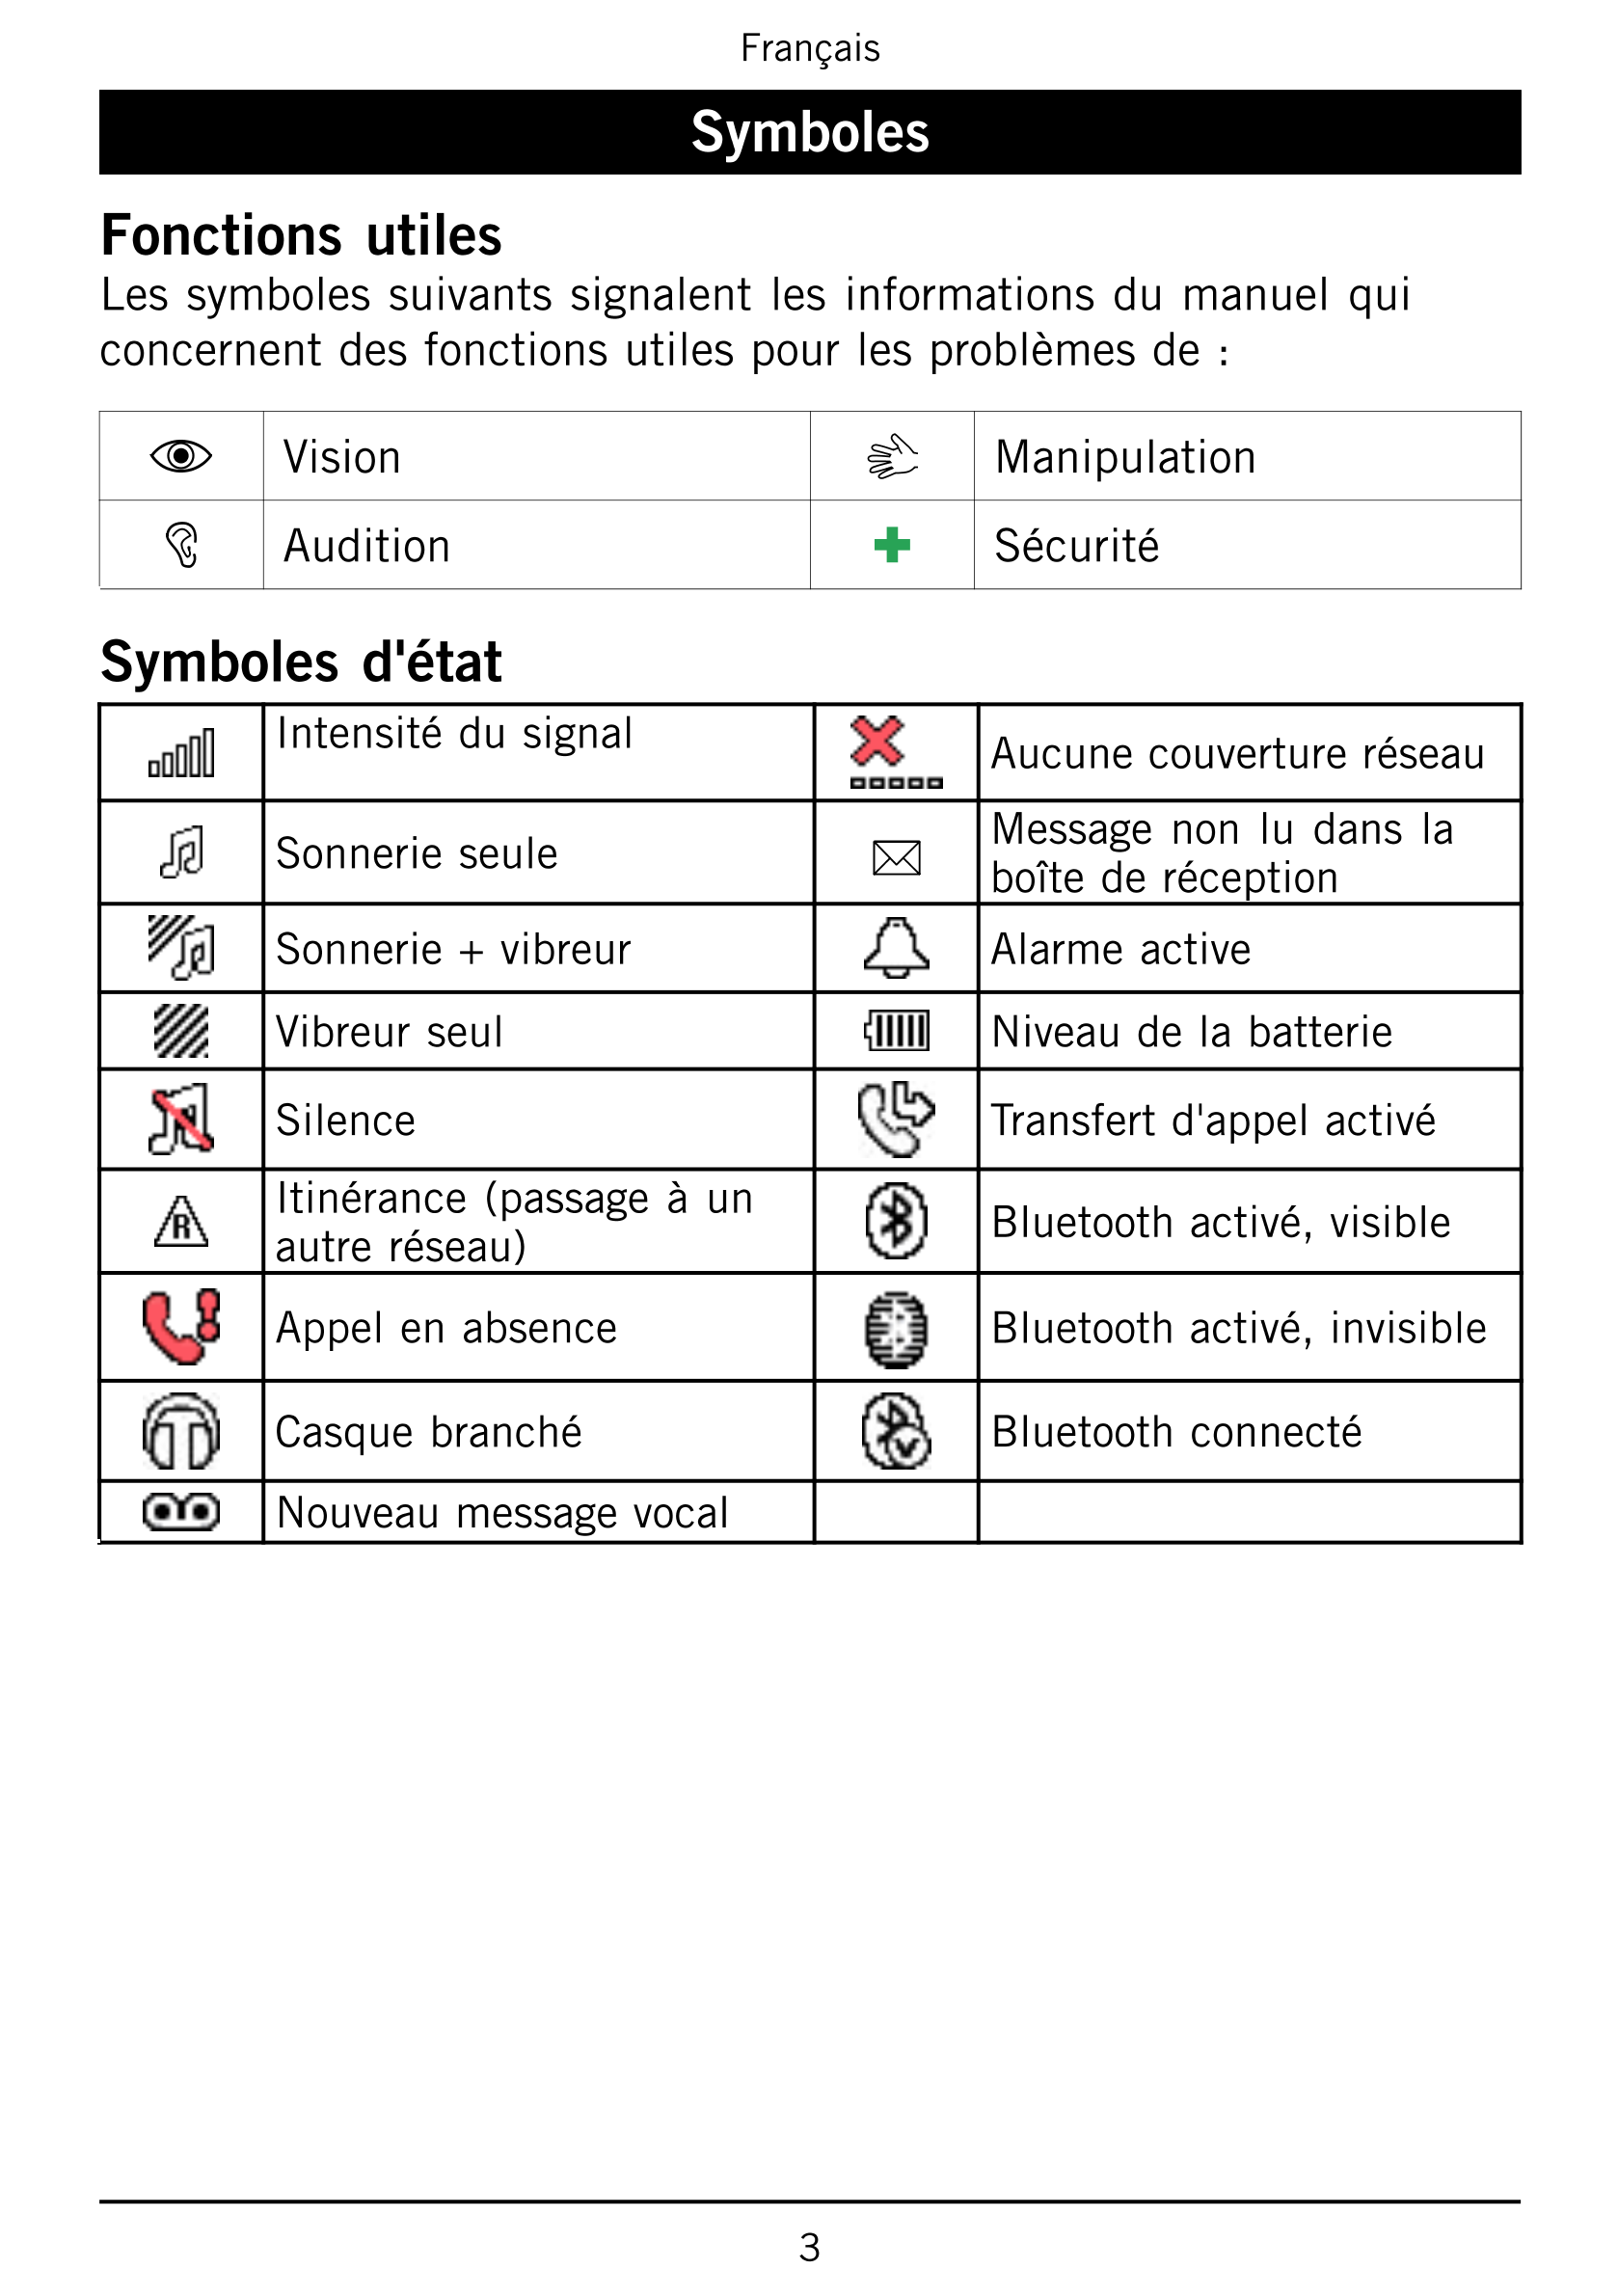 Français
Symboles
Fonctions utiles
Les symboles suivants signalent les informations du manuel qui
concernent des fonctions utile